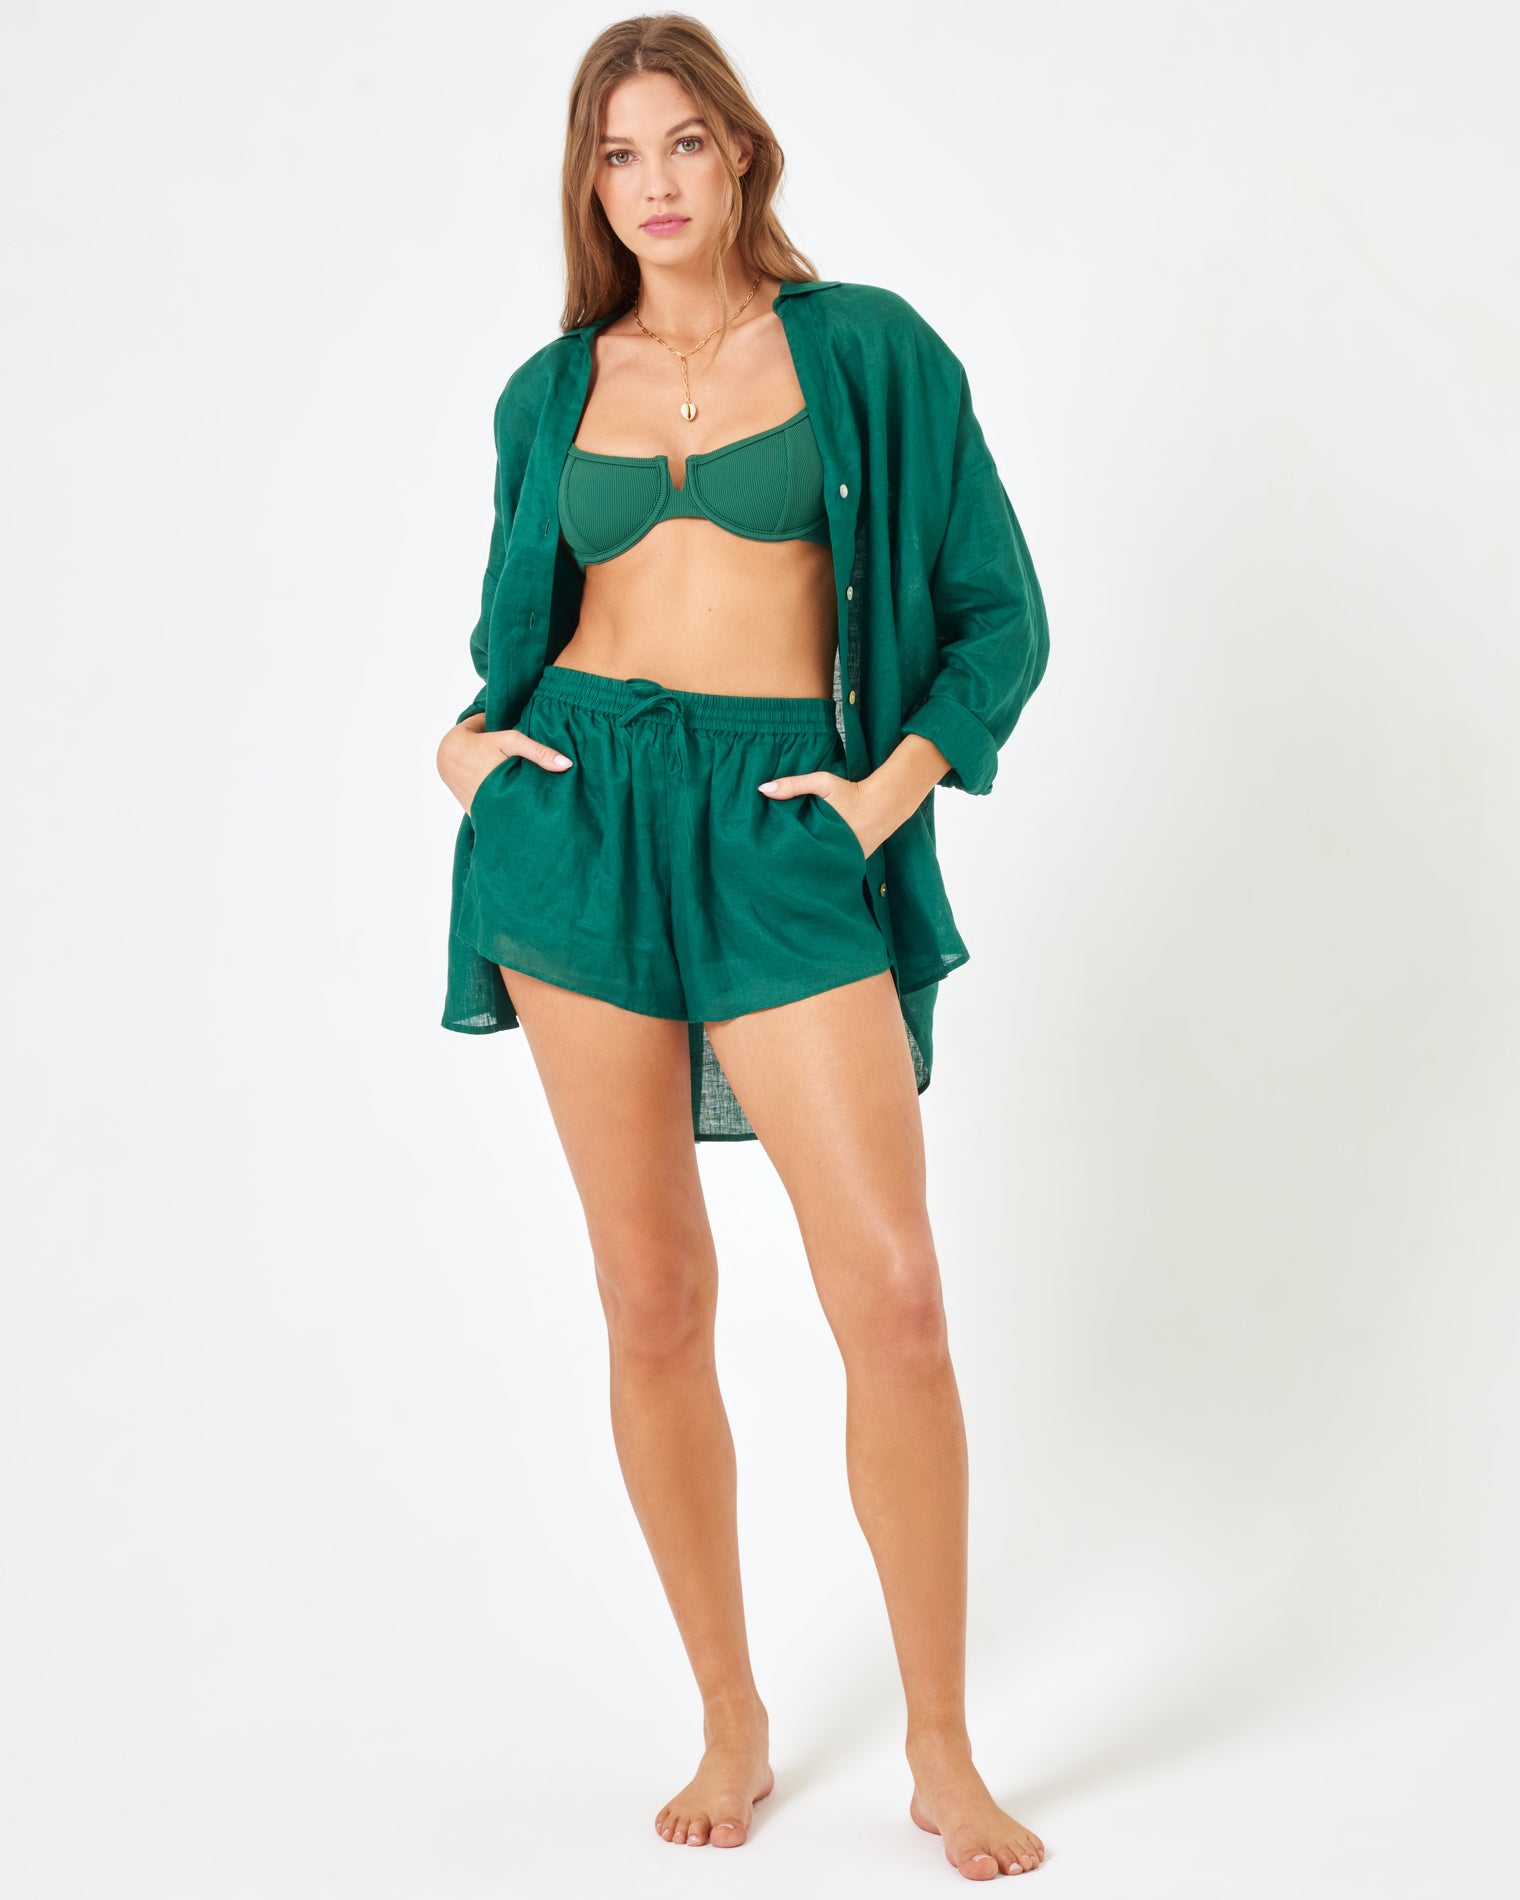 LSPACE x Revolve Rio Tunic - Emerald Emerald | Model: Daria (size: S)